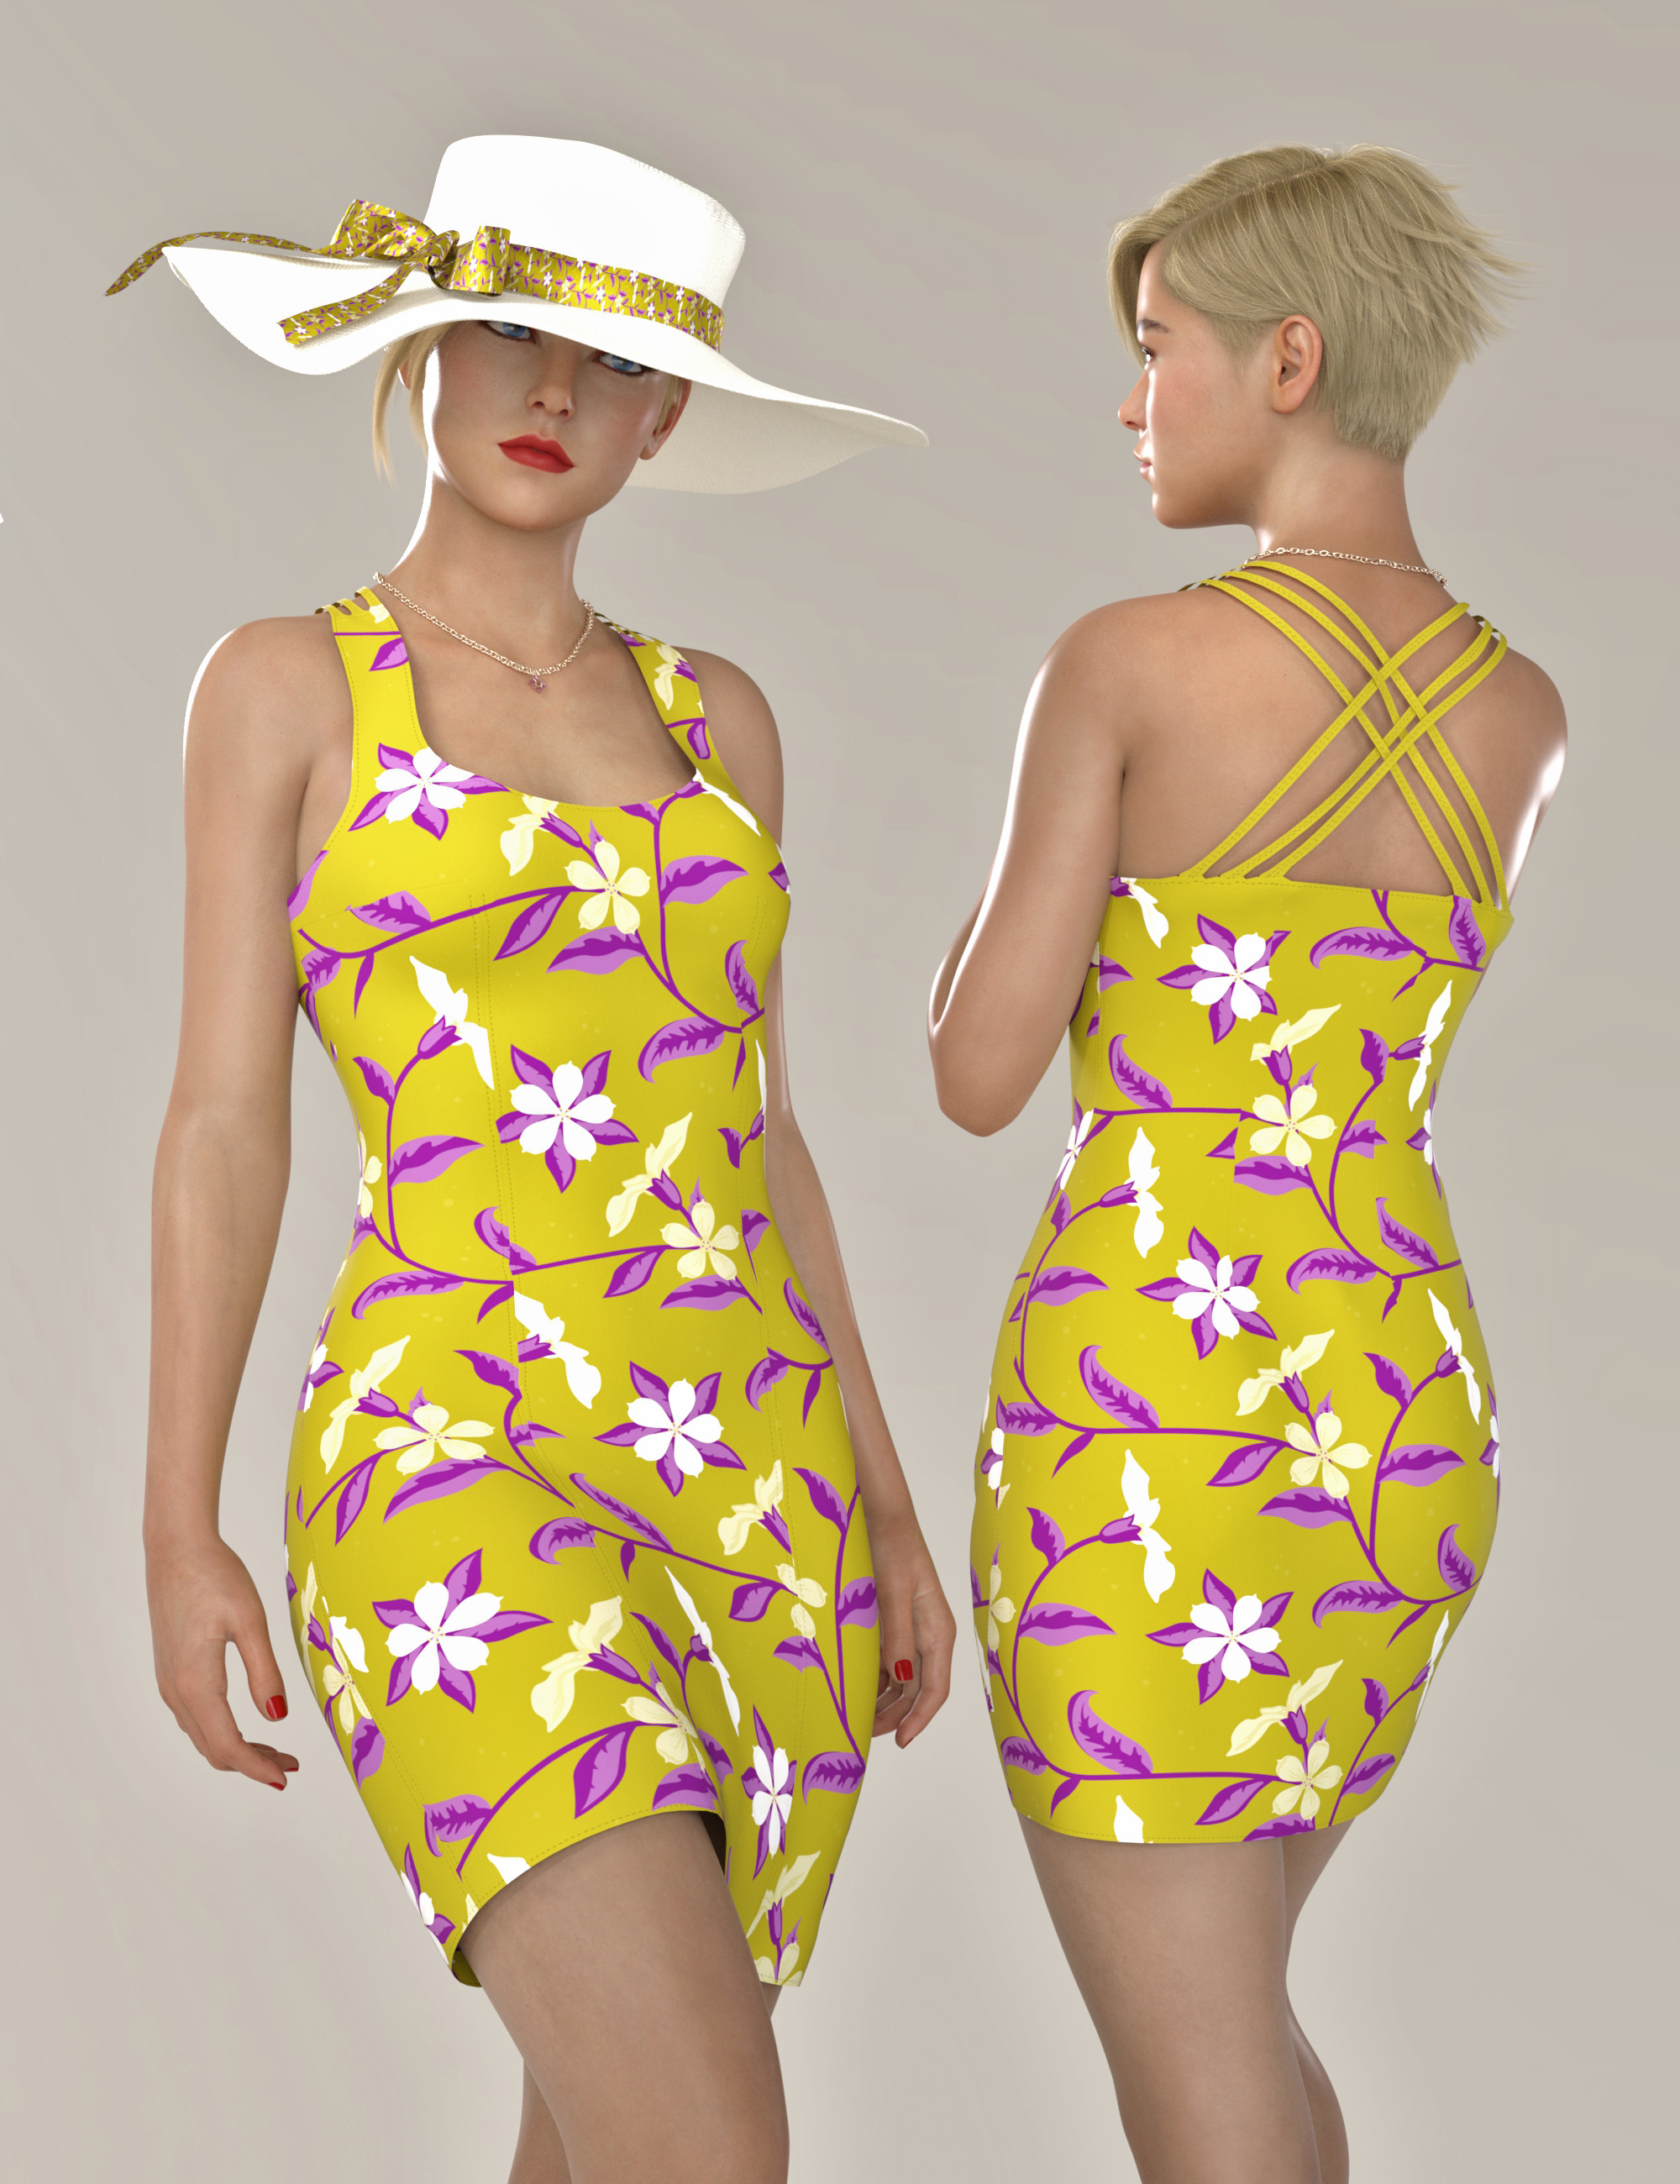 dForce Catie Outfit Texture Expansion | Daz 3D